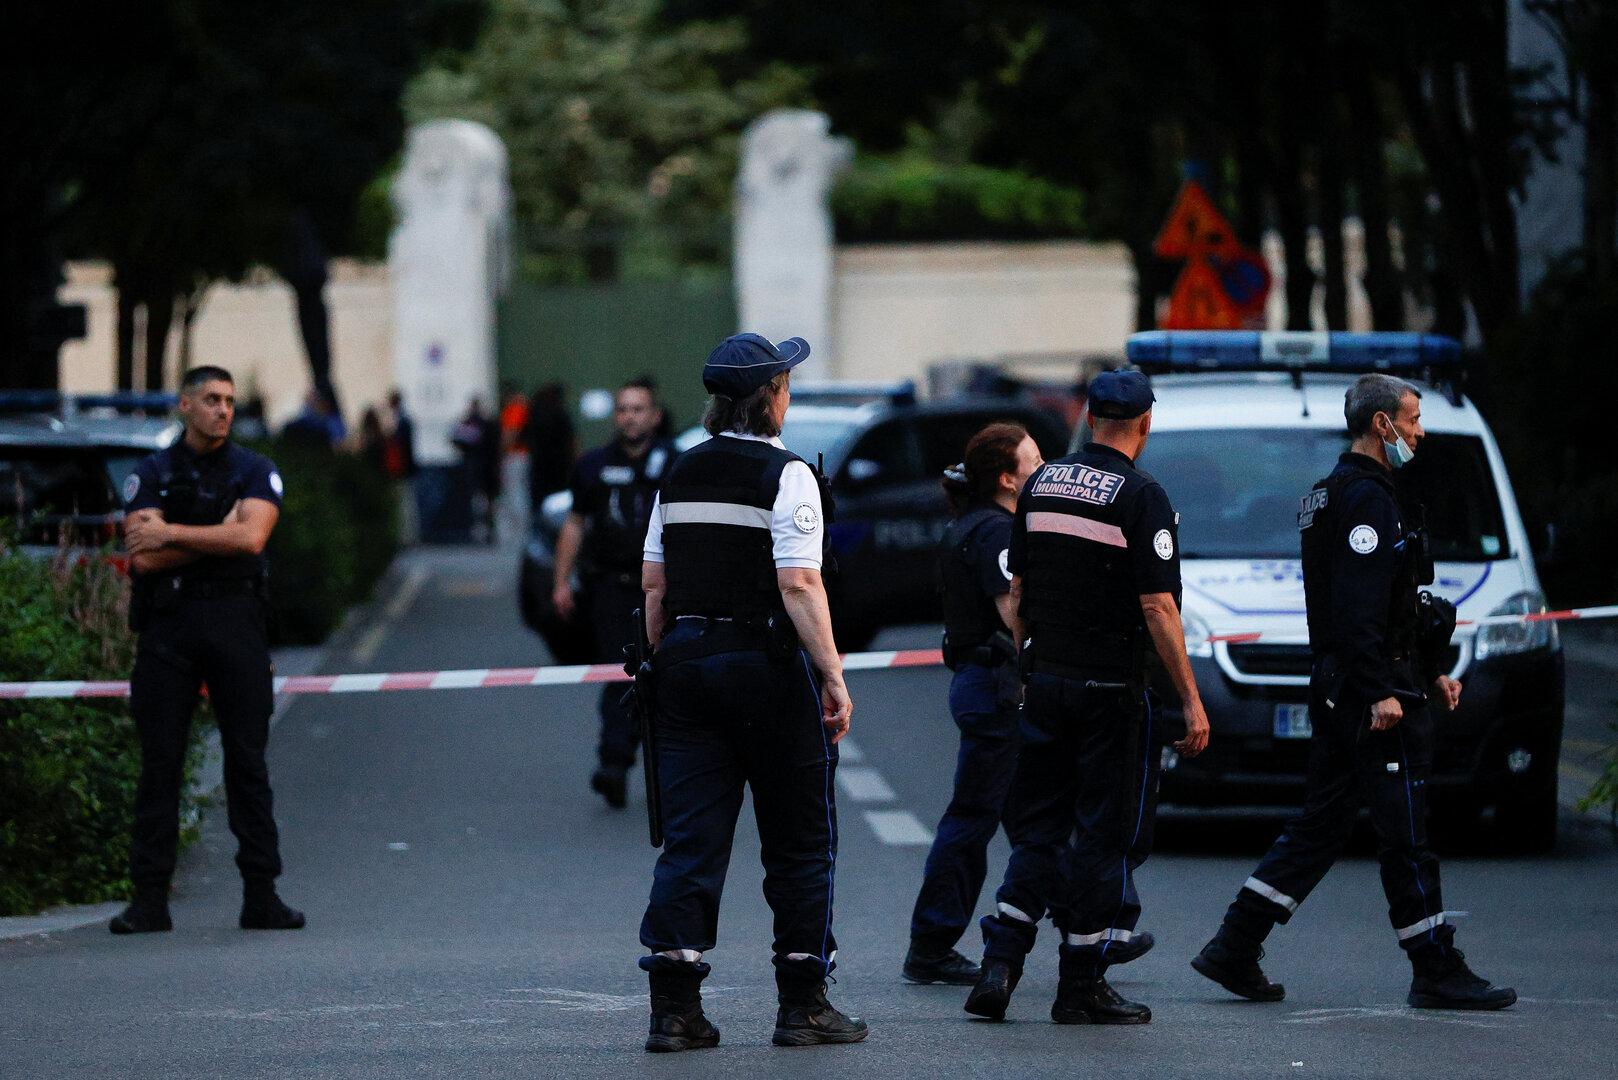 Paris: Mann nach Messerangriff auf Polizisten angeschossen